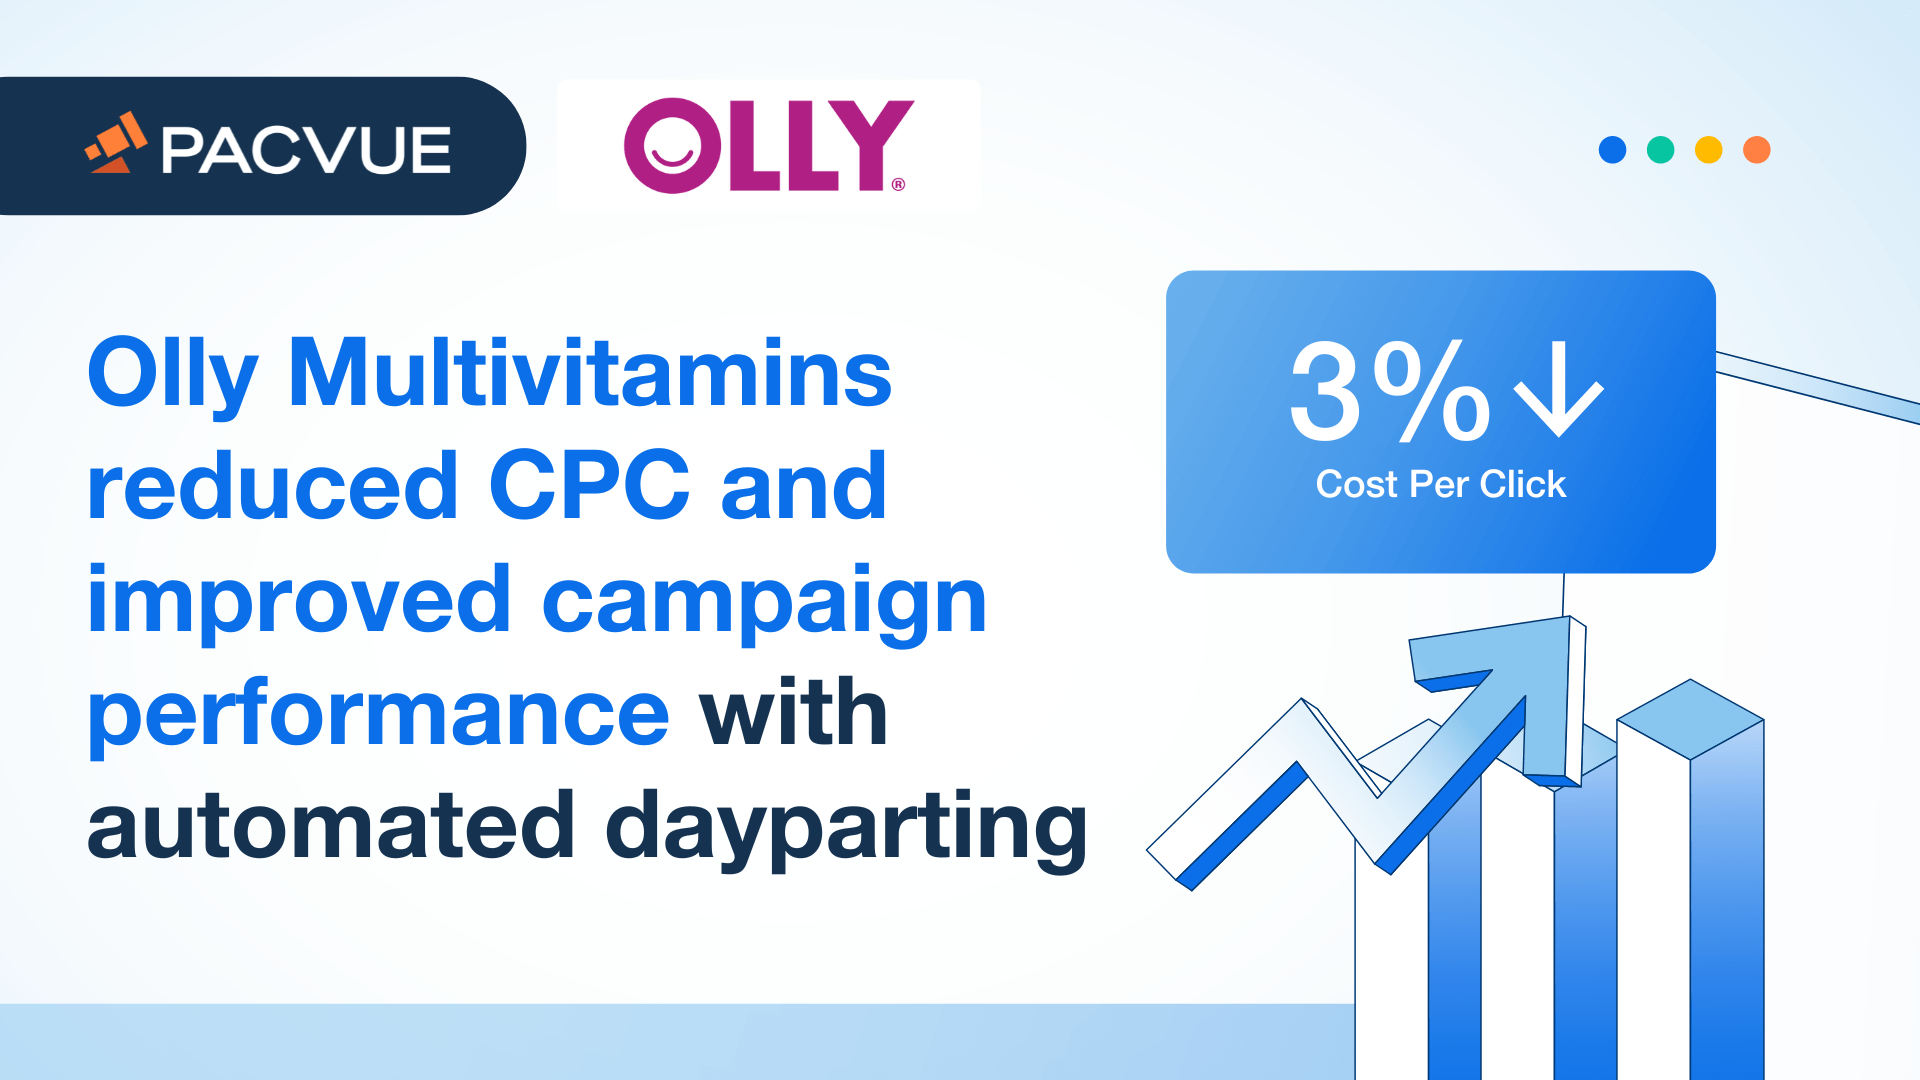 Olly Multivitamins redujo el CPC y mejoró el rendimiento de la campaña con la distribución diaria automatizada.